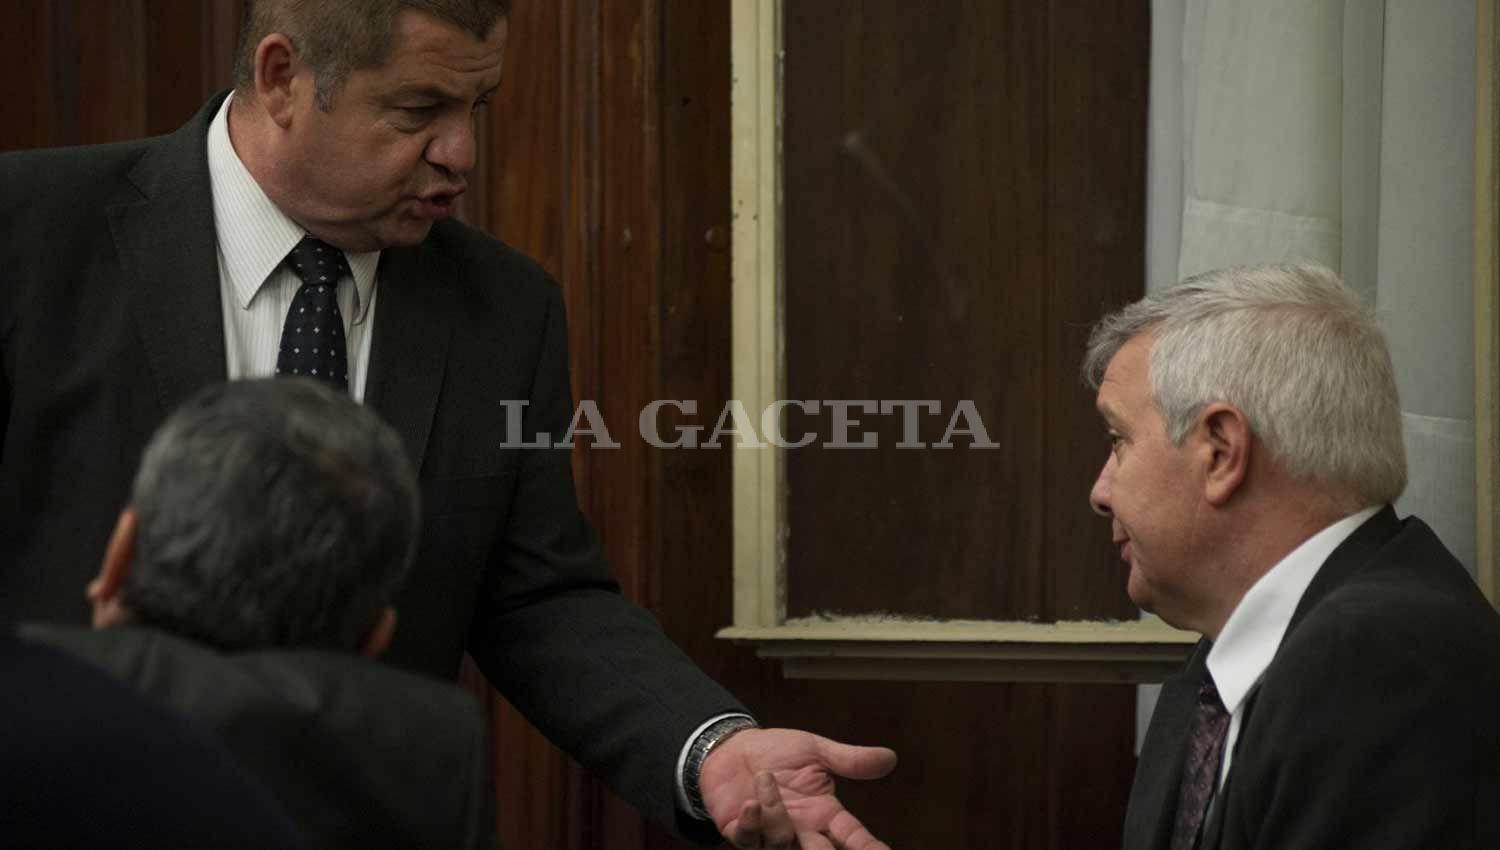 Los imputados Barrera y Sánchez, conversan luego de la pelea de sus abogados. LA GACETA / FOTO DE JORGE OLMOS SGROSSO